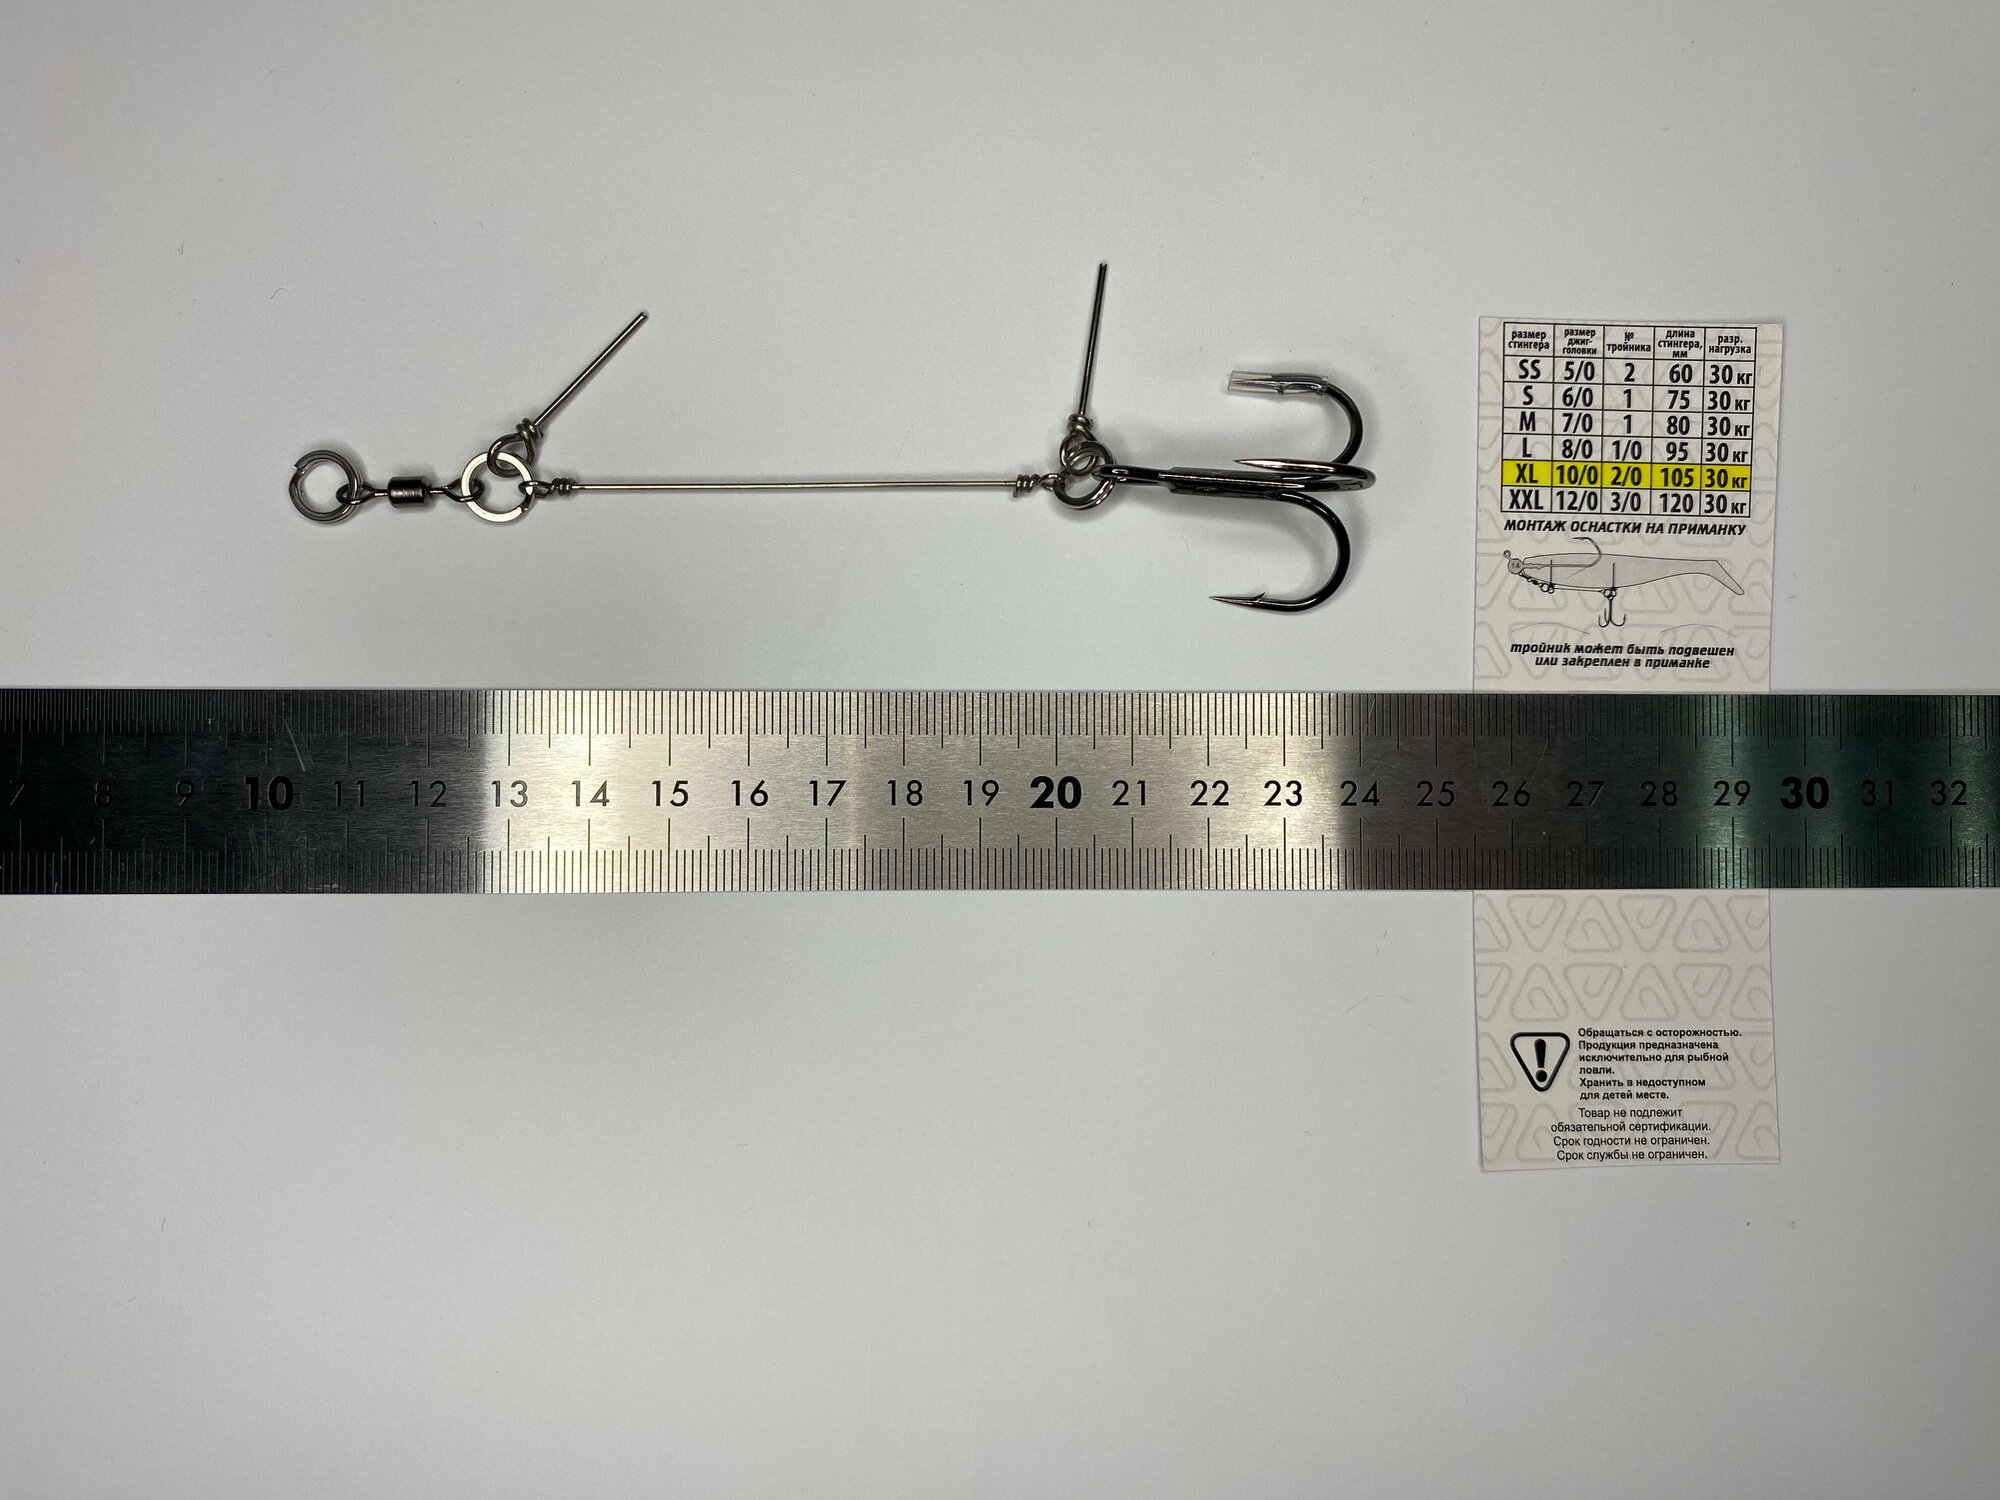 Стингерная оснастка XL под джиг головку 10/0, длинна 105 мм, крючок 2/0, стингер для силиконовых приманок Корея